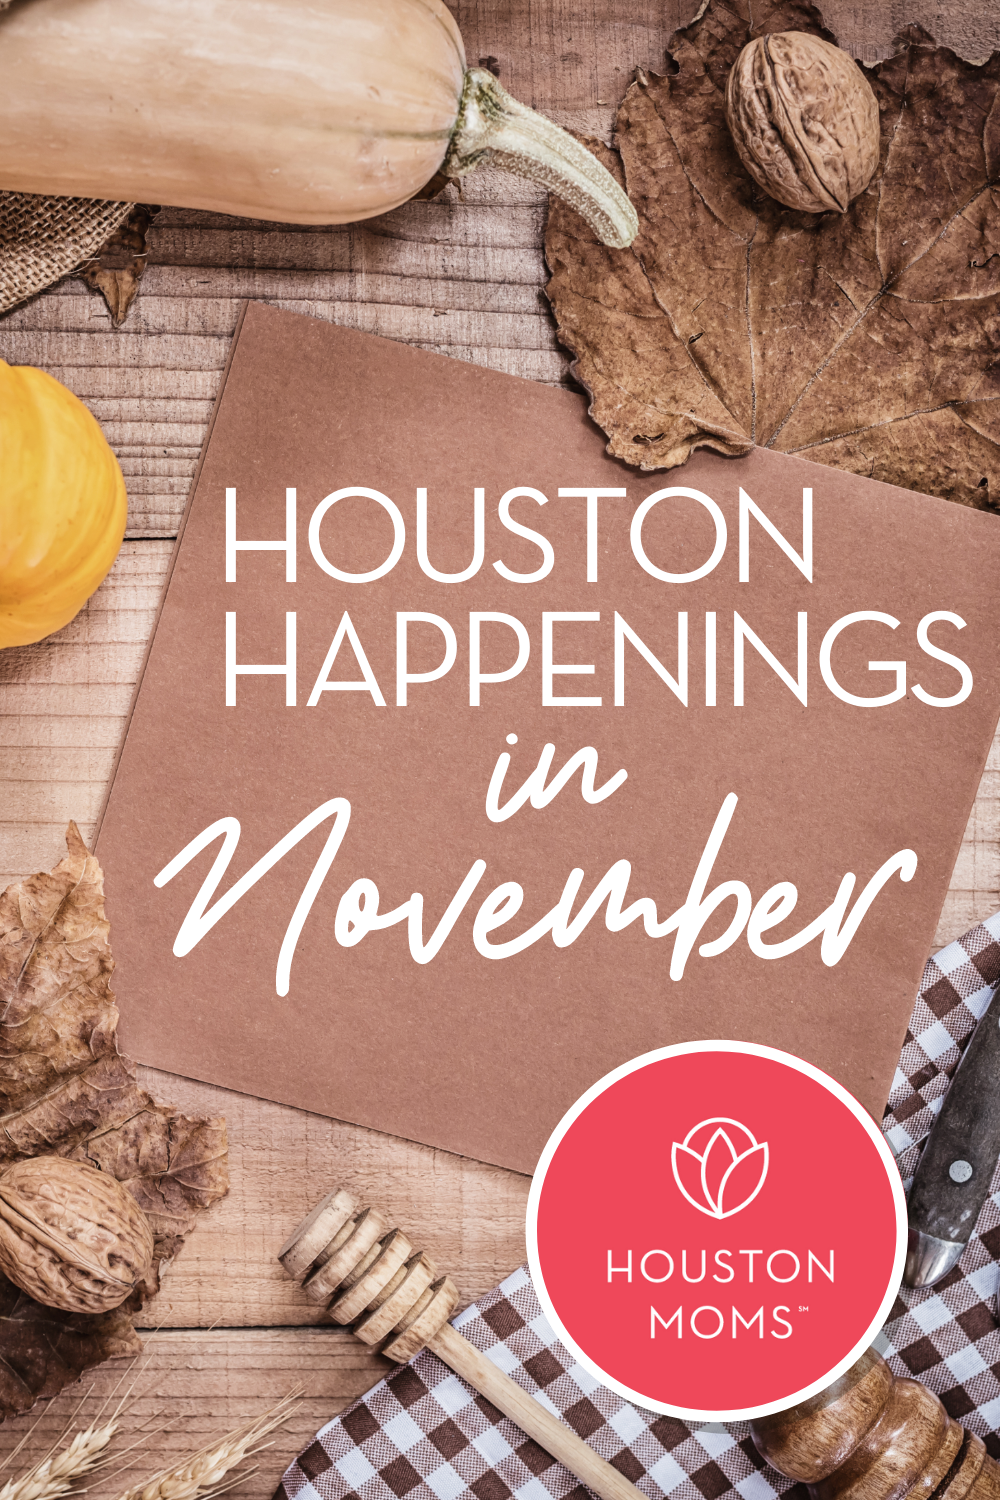 Houston Moms Blog "Houston Happenings in November" #houstonmoms #houstonmomsblog #momsaroundhouston